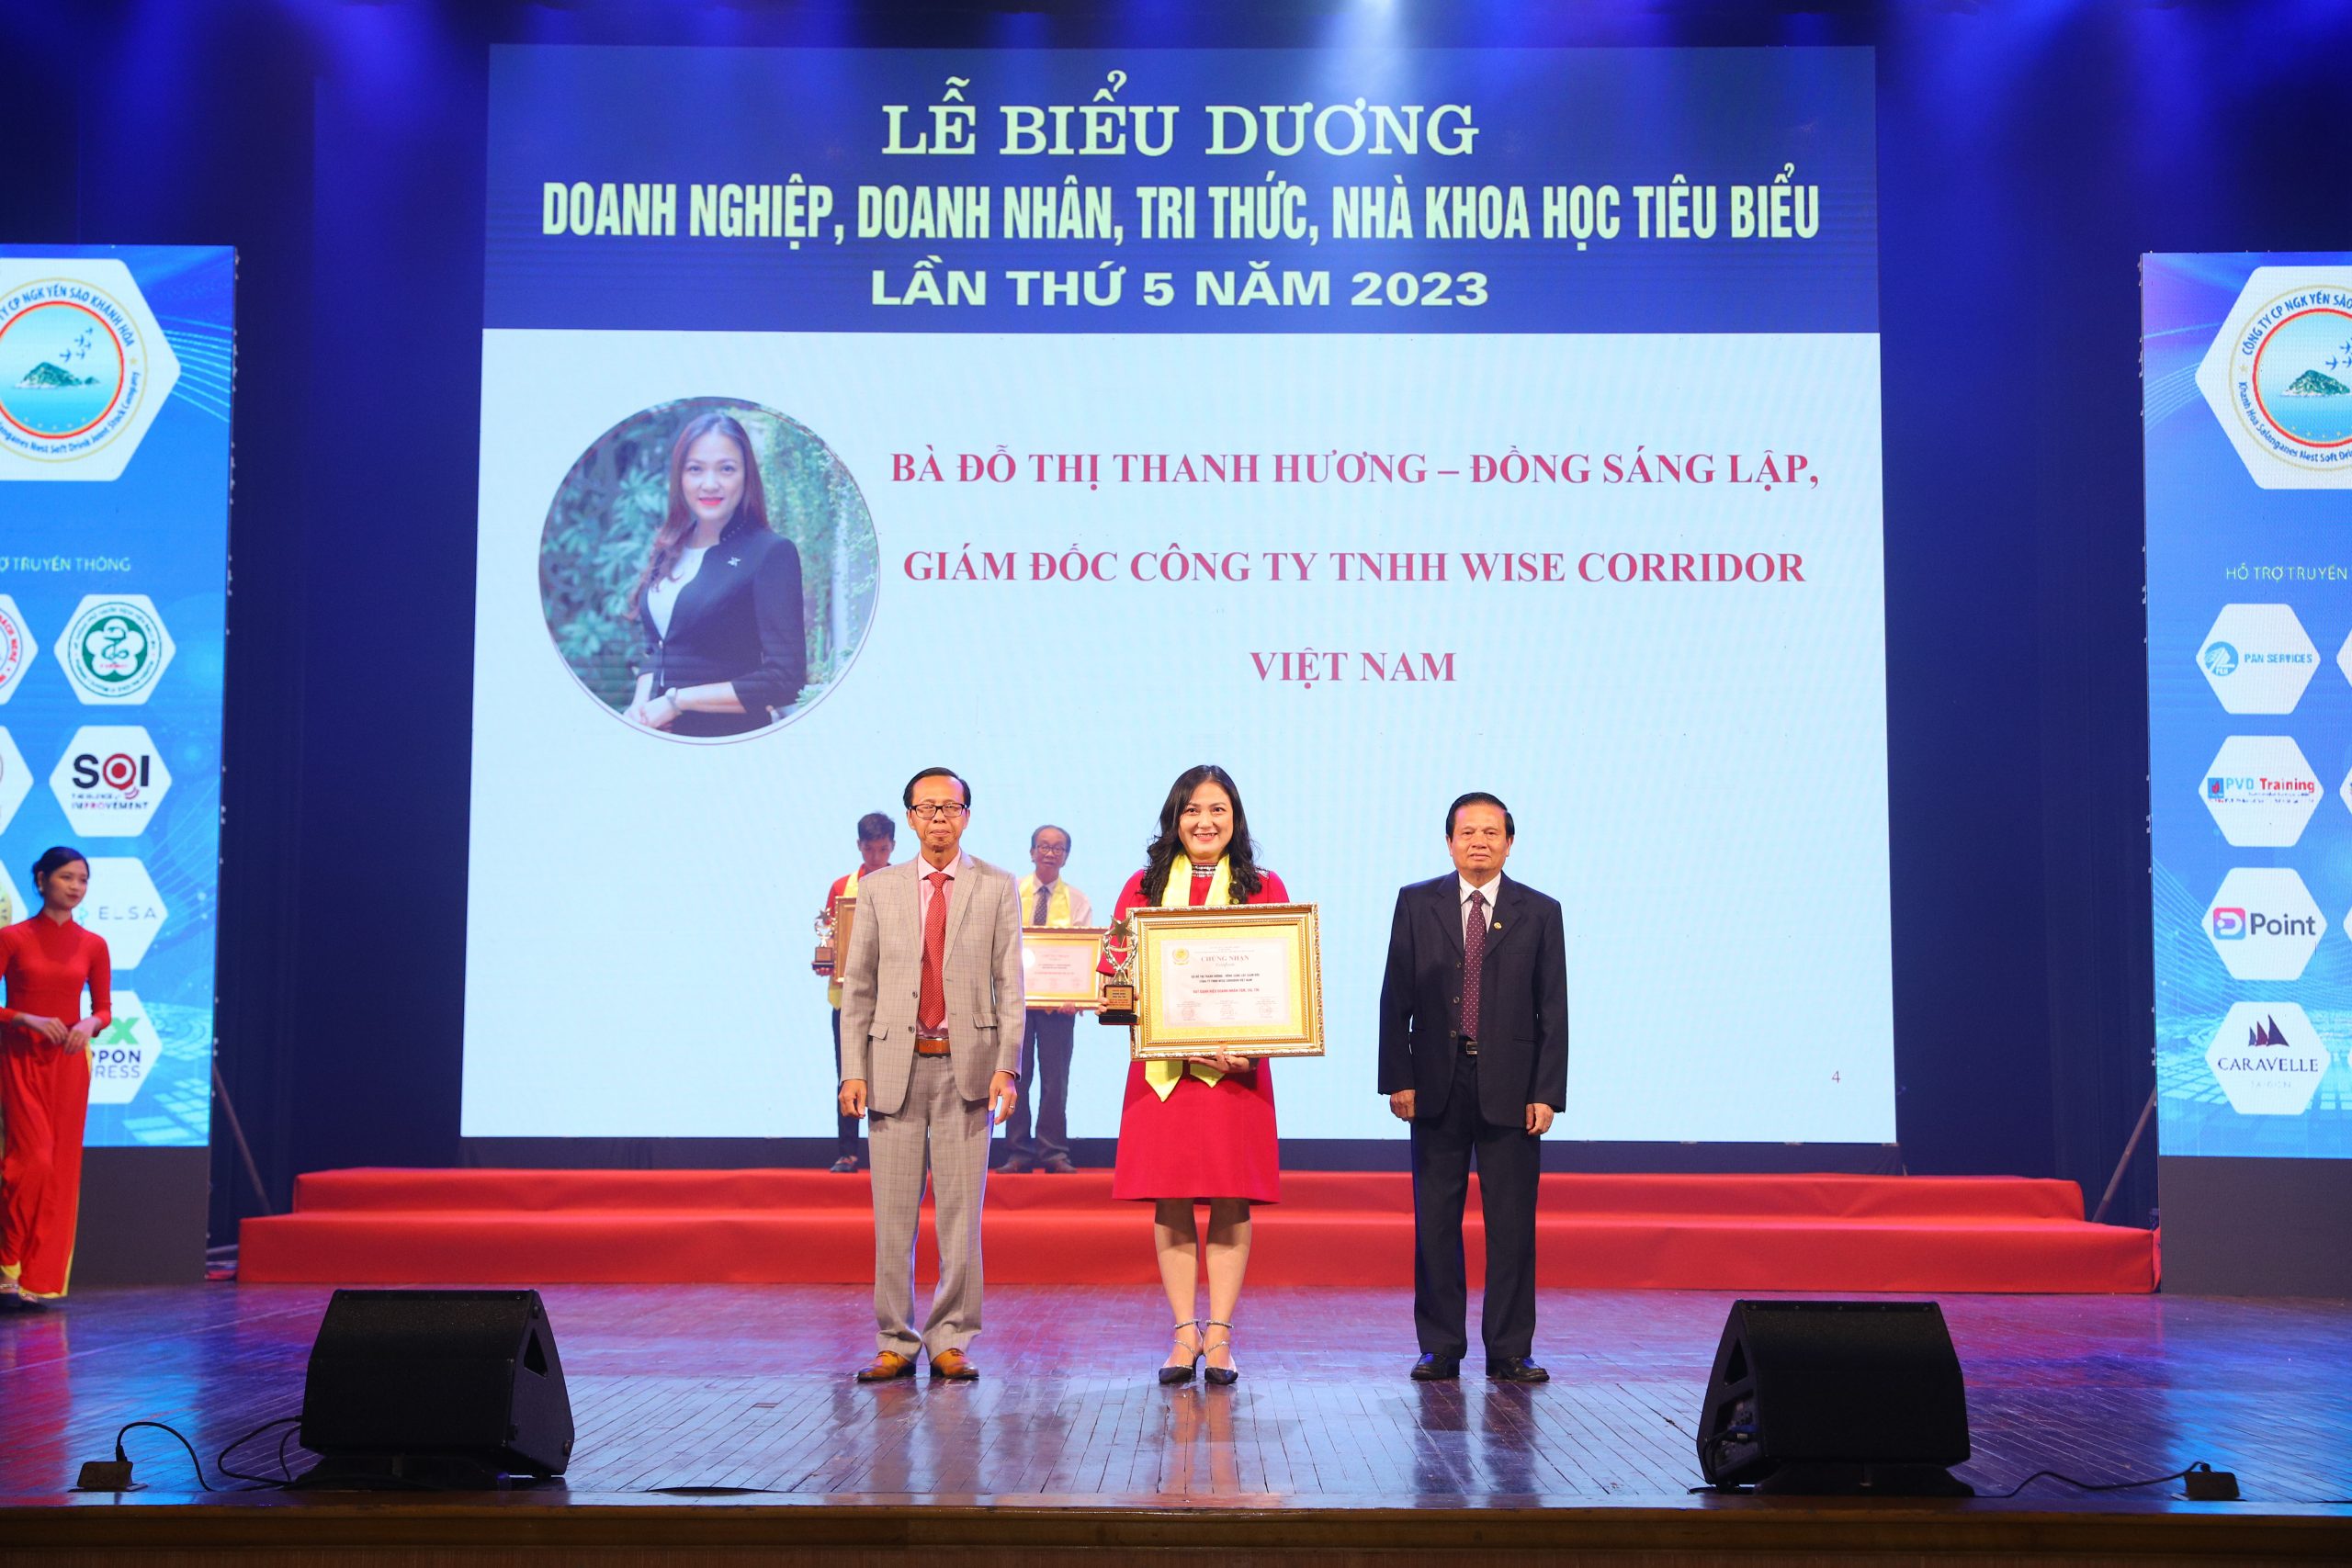 CEO Đỗ Thanh Hương nhận giải thưởng doanh nhân Doanh nhân Trí thức, nhà khoa học tiêu biểu năm 2023